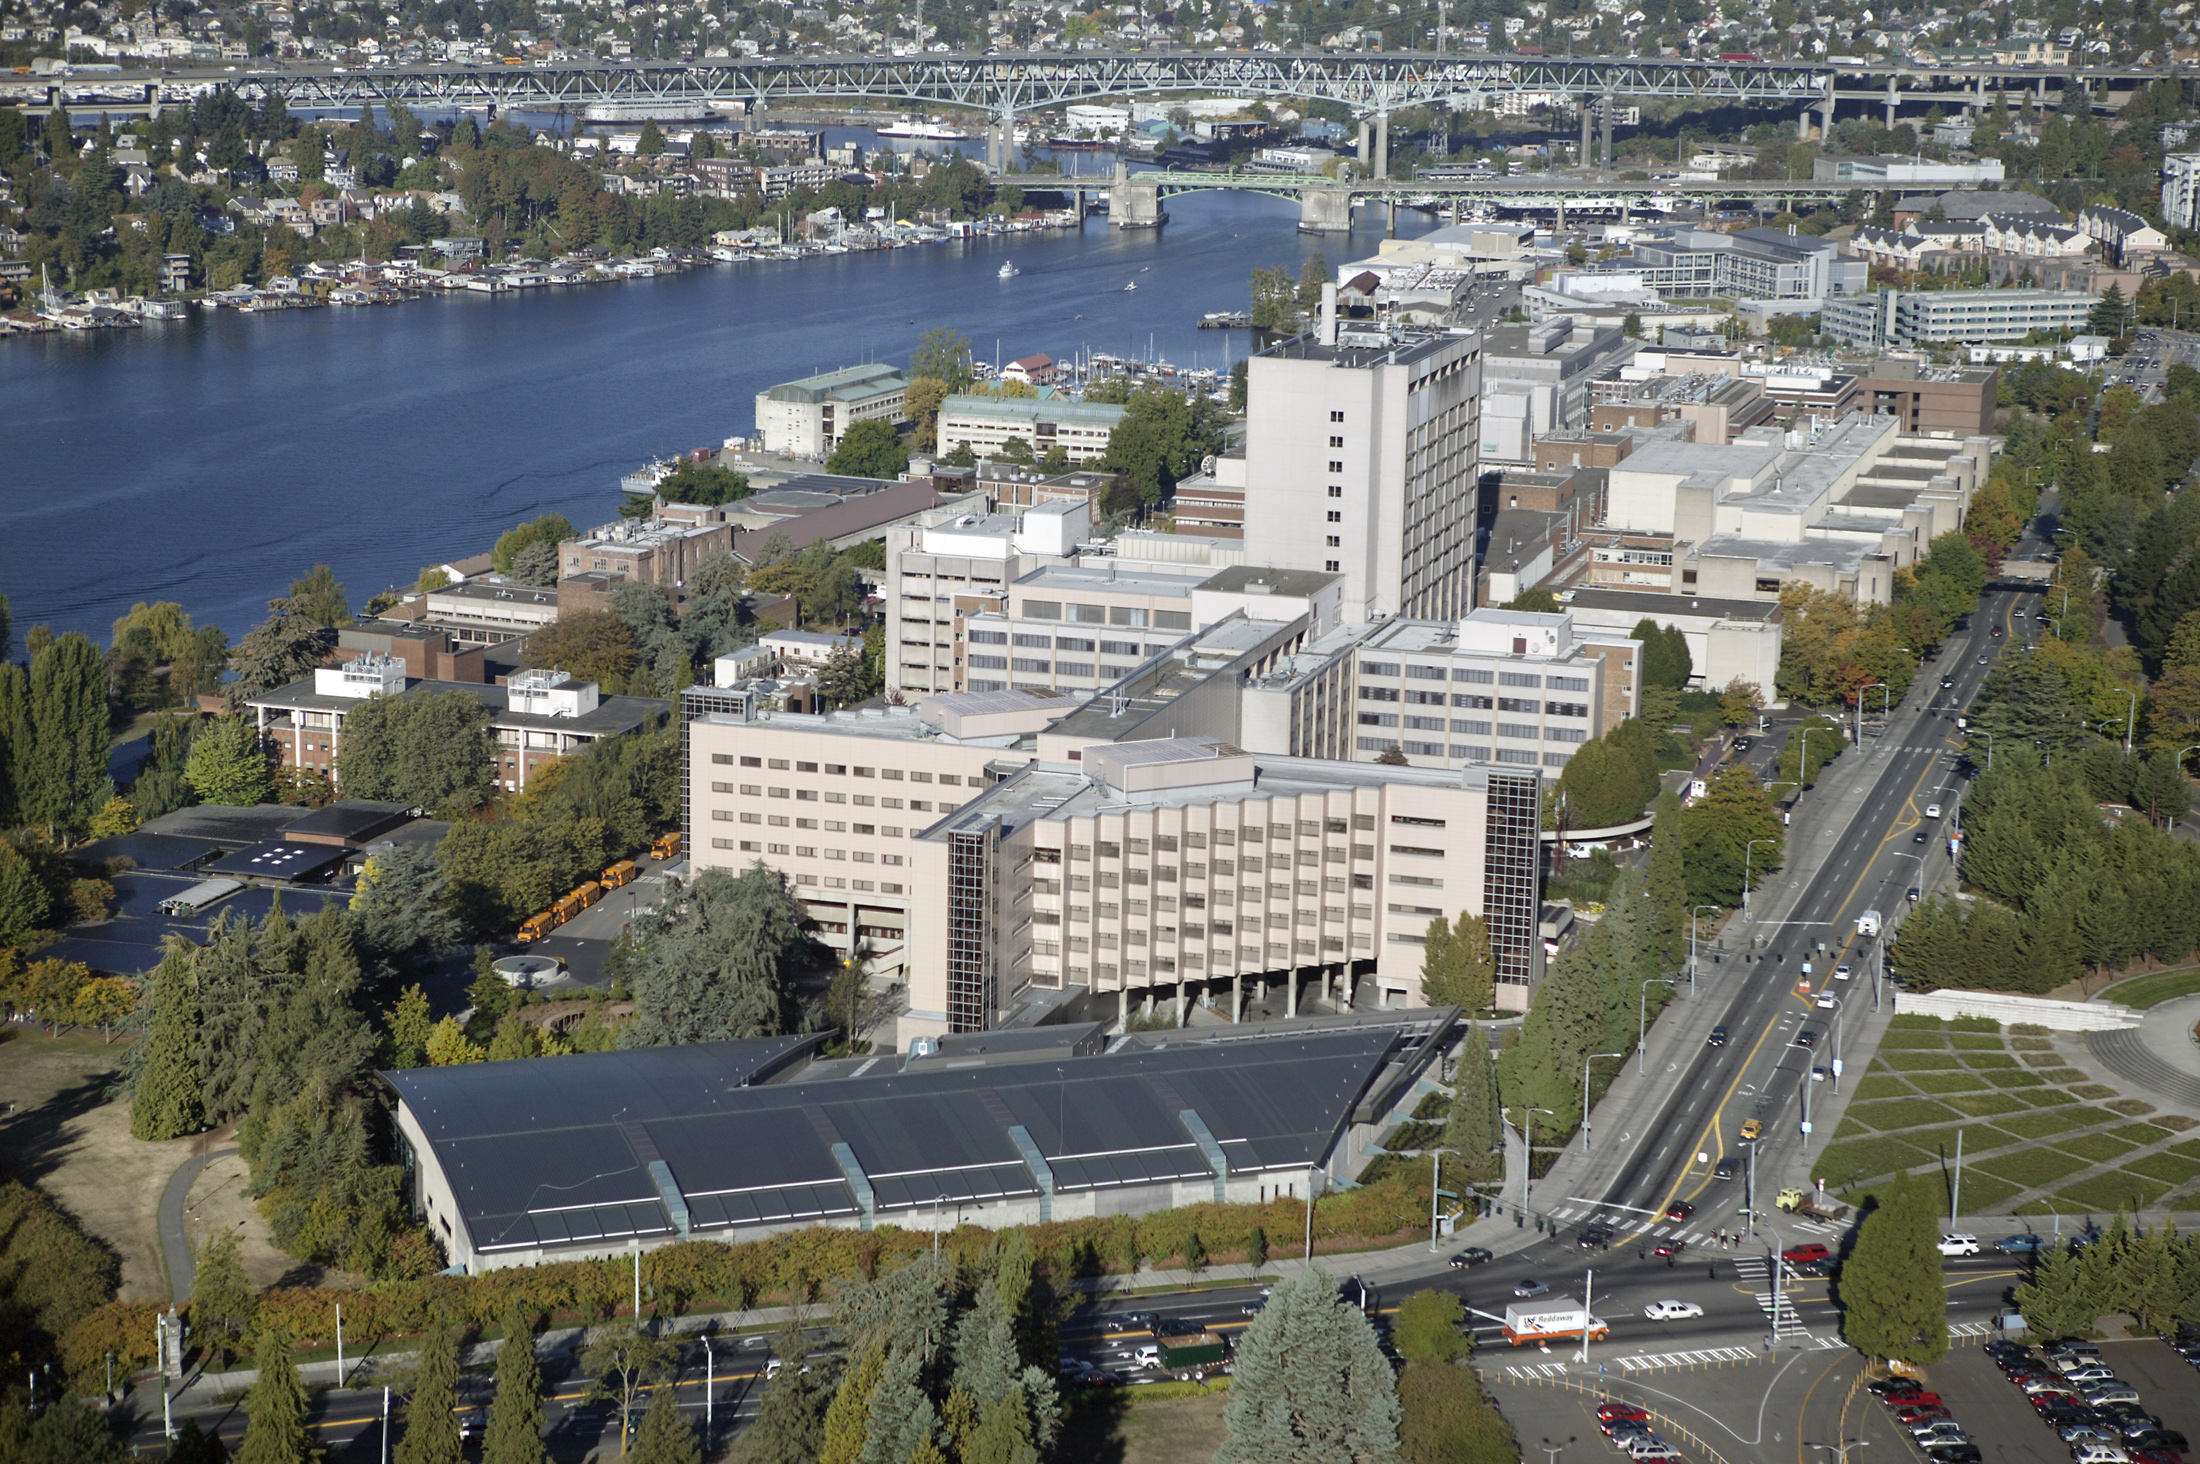 University of Washington Surgery Pavilion